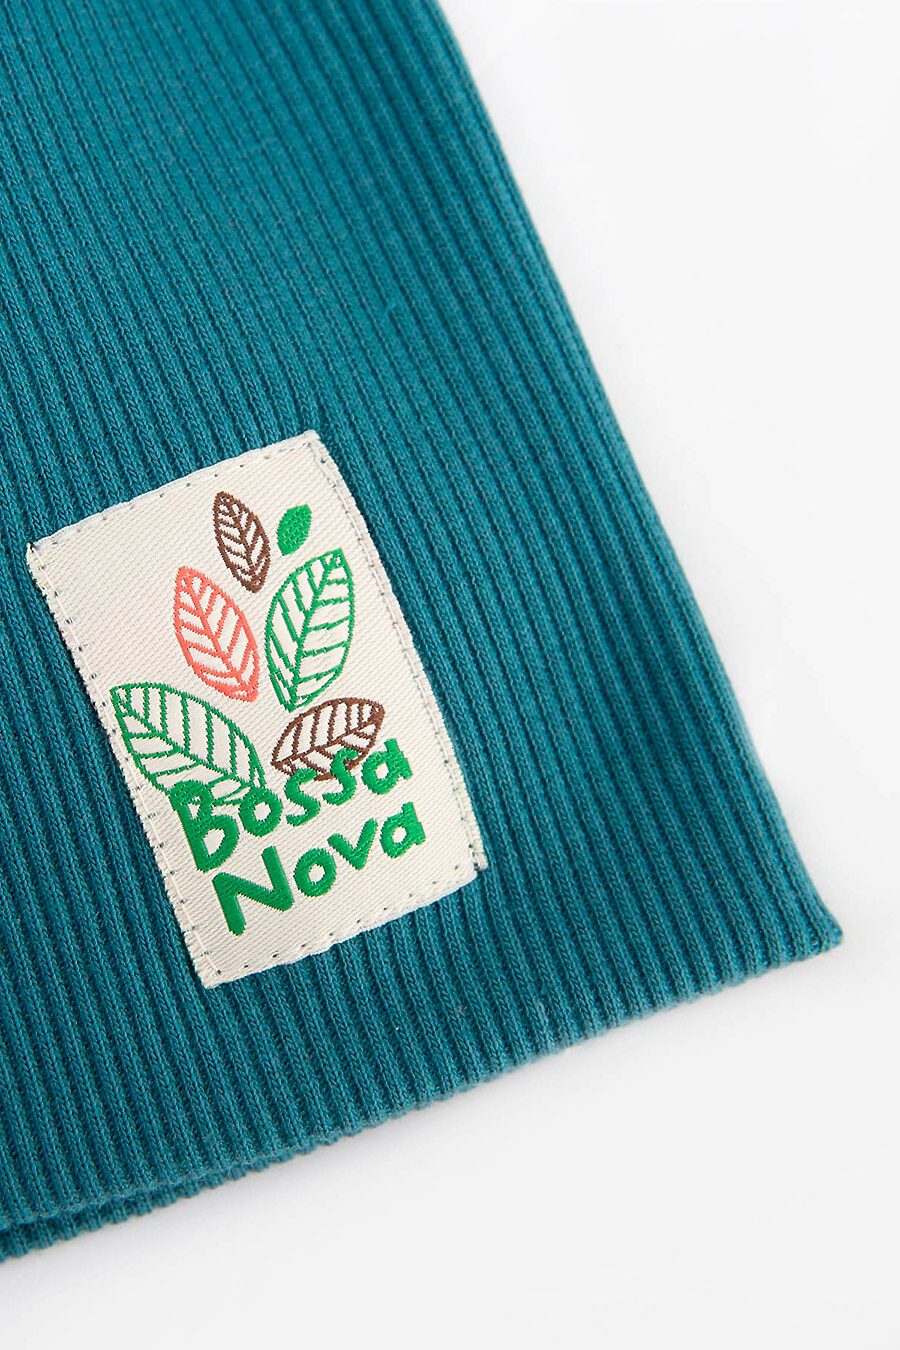 Шапка для девочек BOSSA NOVA 742559 купить оптом от производителя. Совместная покупка детской одежды в OptMoyo